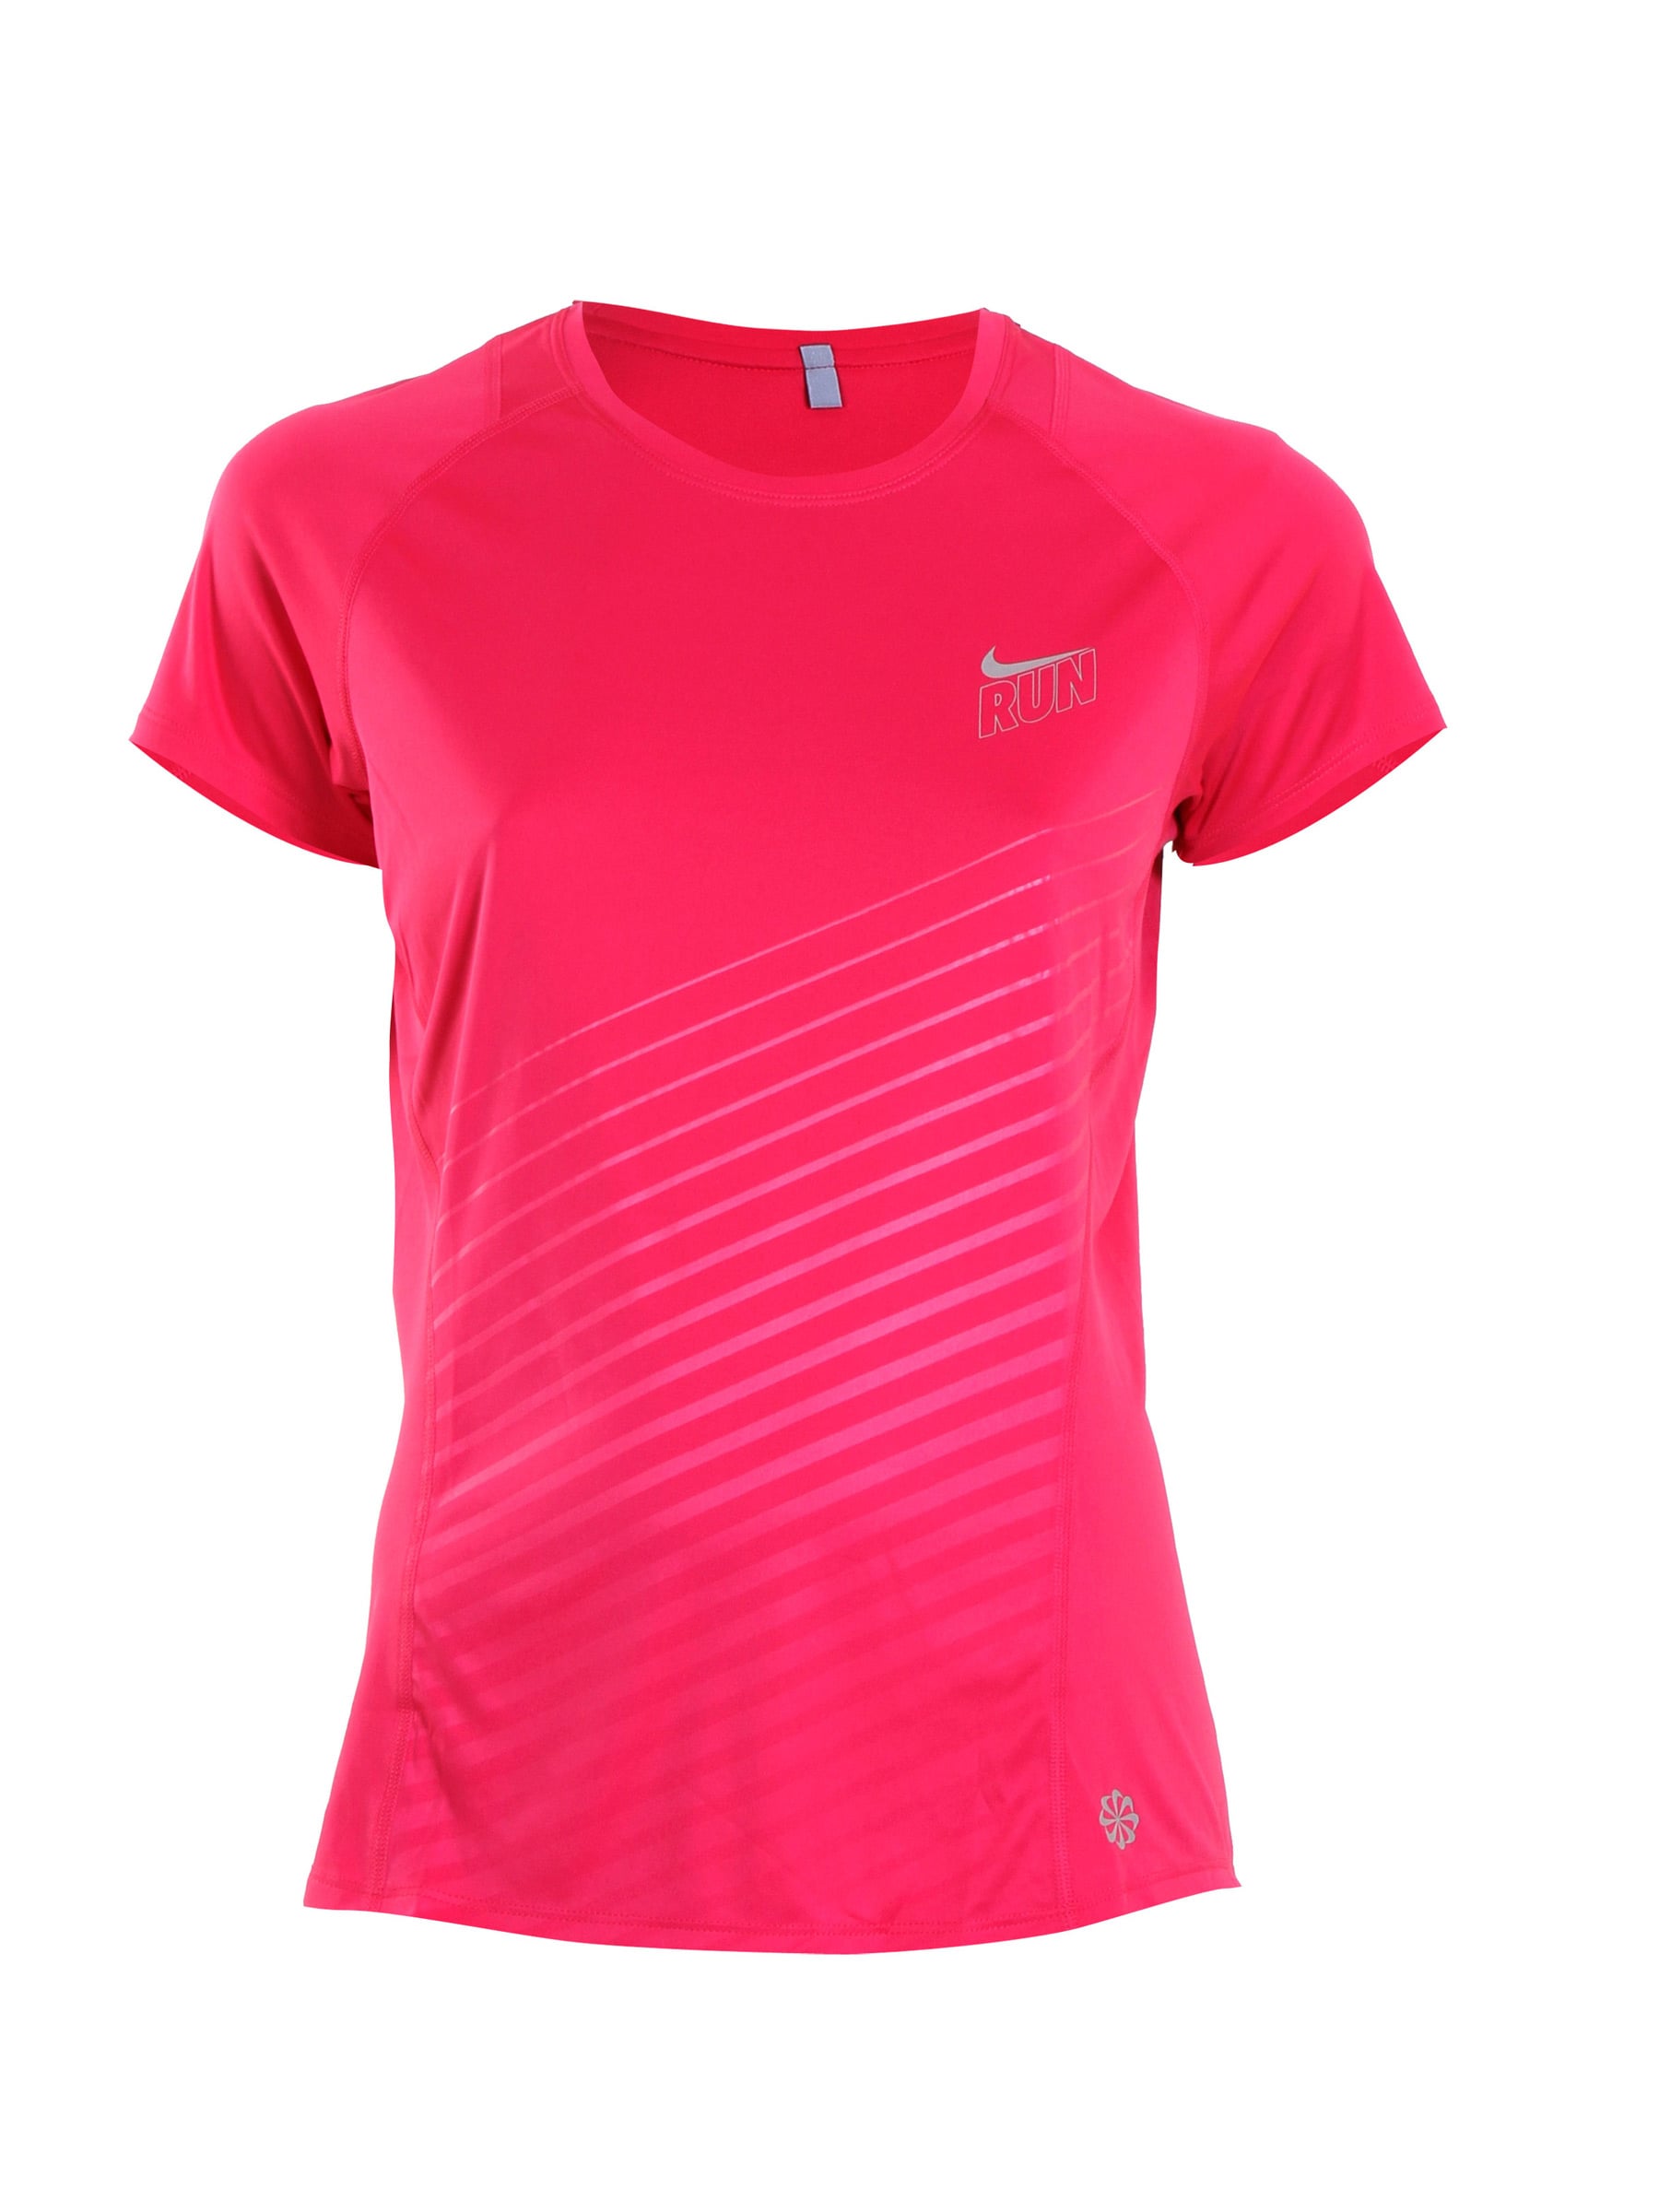 Nike Women SS Pink T-shirt